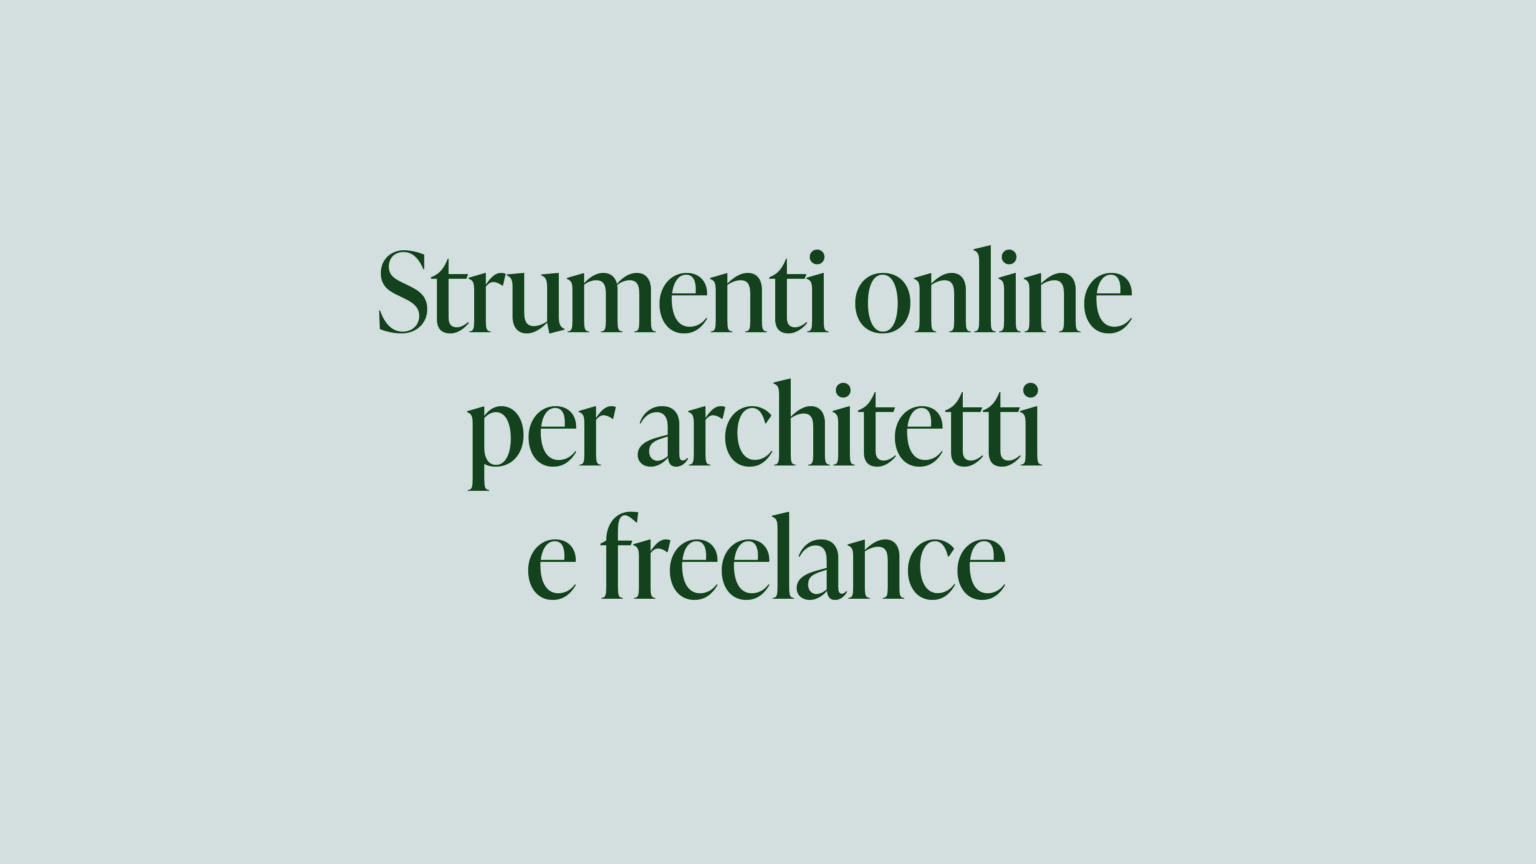 Strumenti online per architetti e freelance